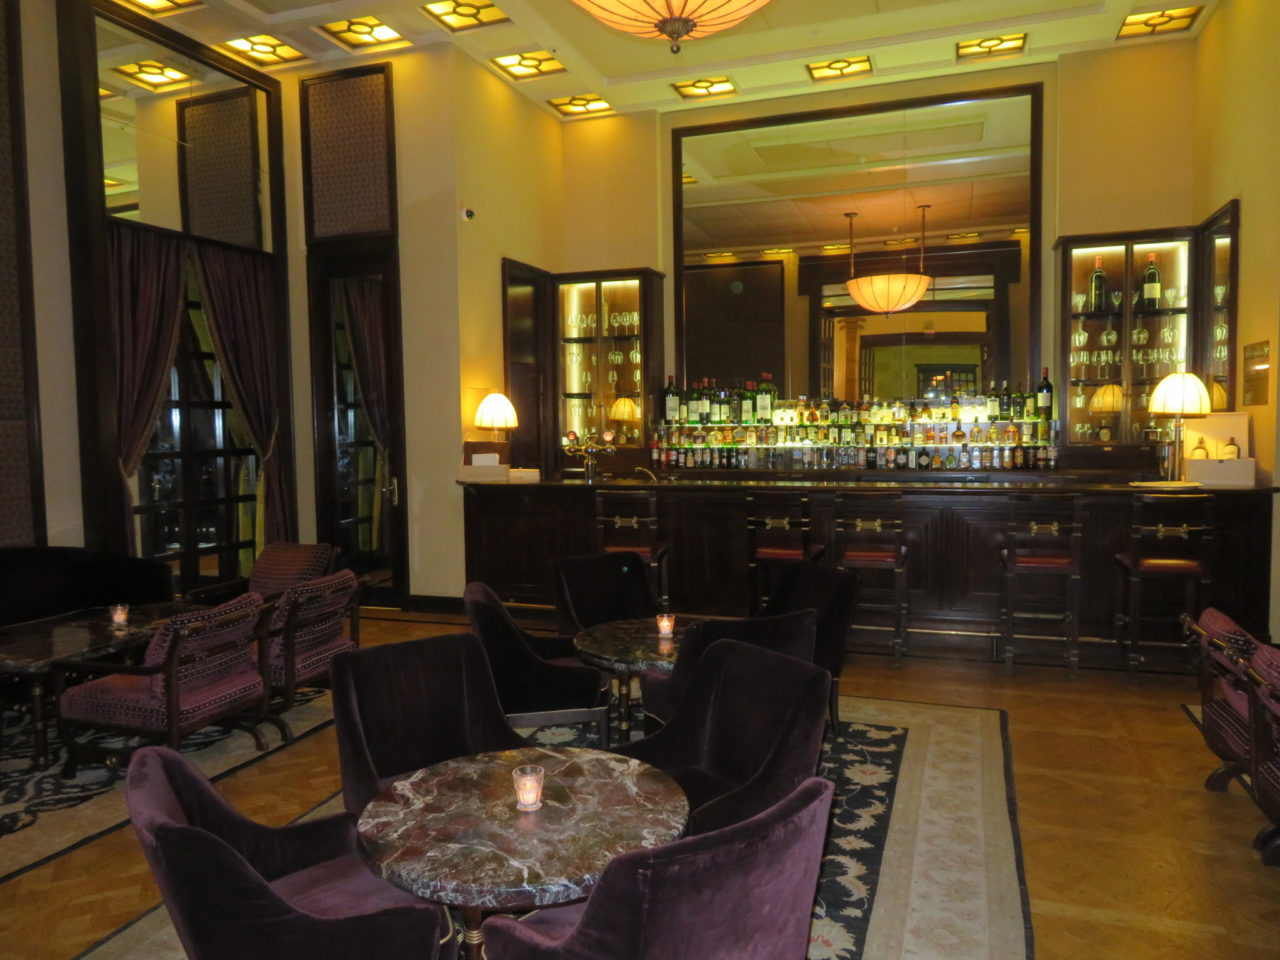 King David Hotel, Jerusalem Israel - The Lobby Bar